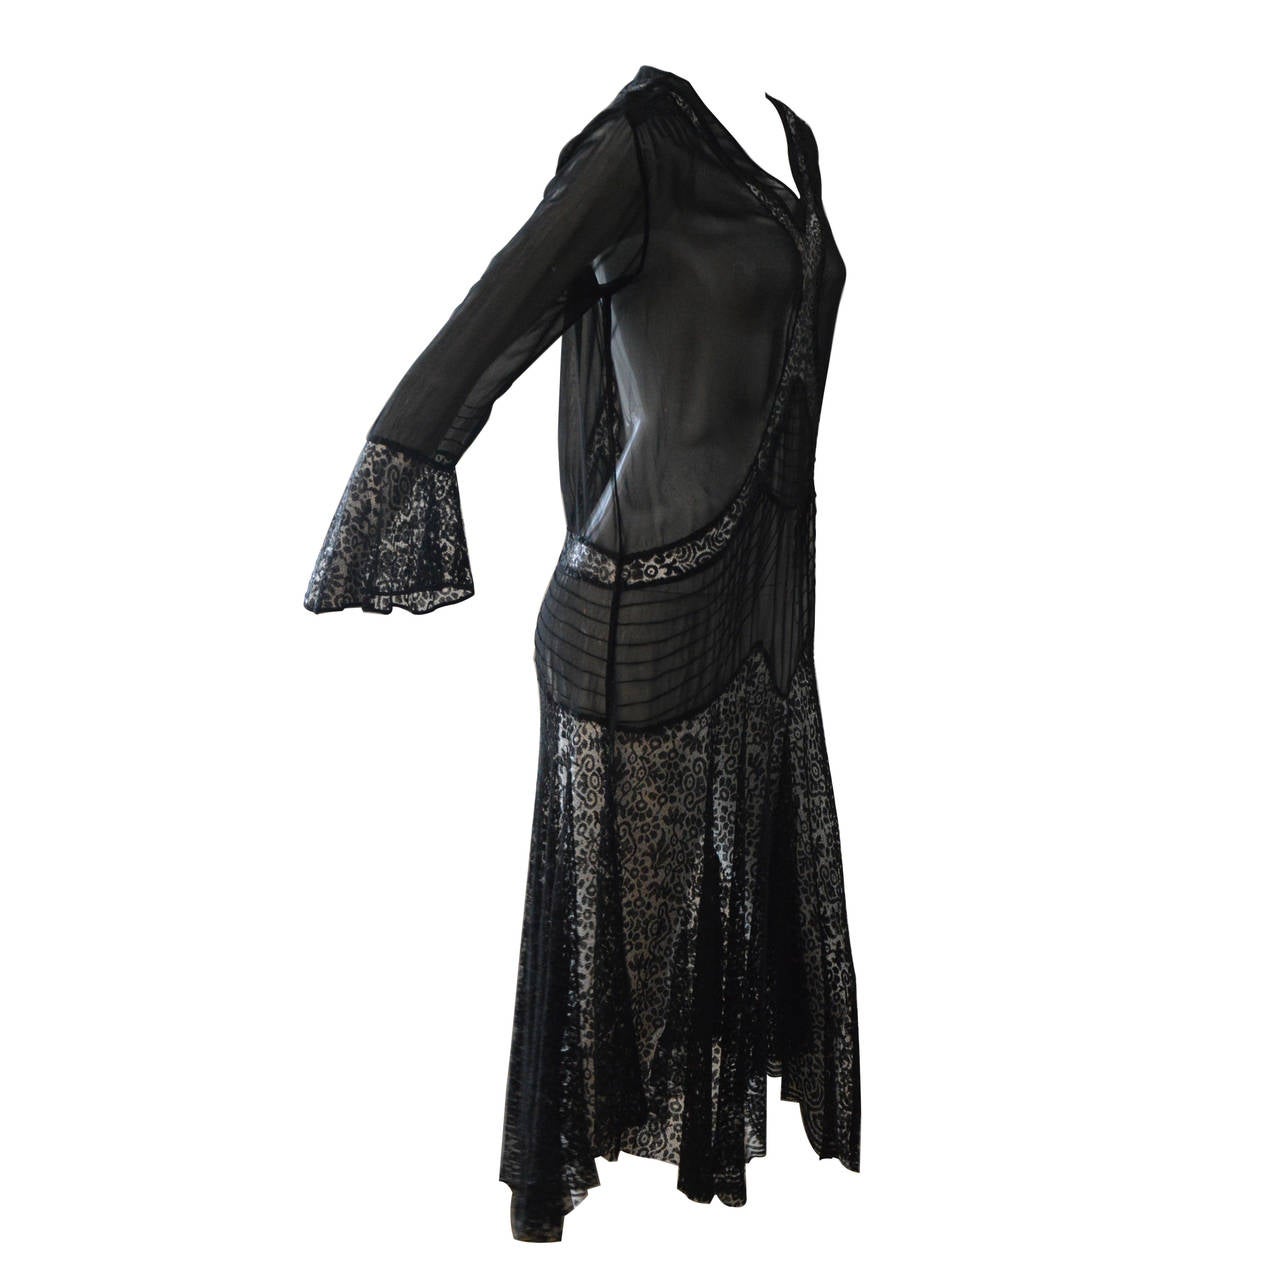 1930s Rare Black Bias Cut Lace Evening Gown